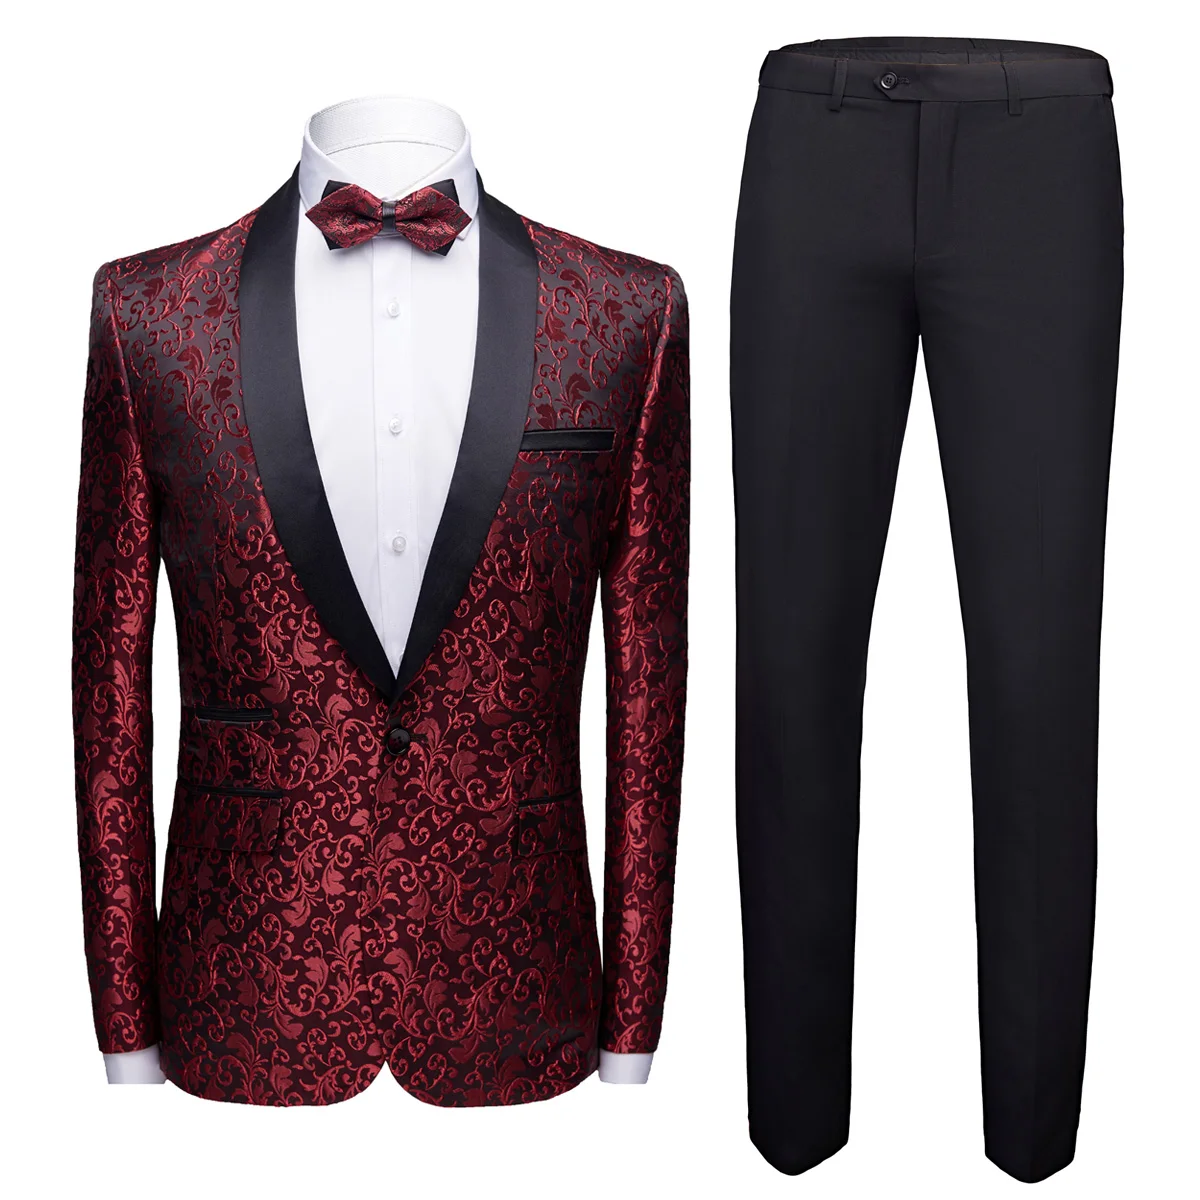 MEN WINE SUIT Men Dinner Suit Elegant Fashion Suit Men Two Piece Suit Men Clothing Formal Fashion Suit Men Suit Suit For Men